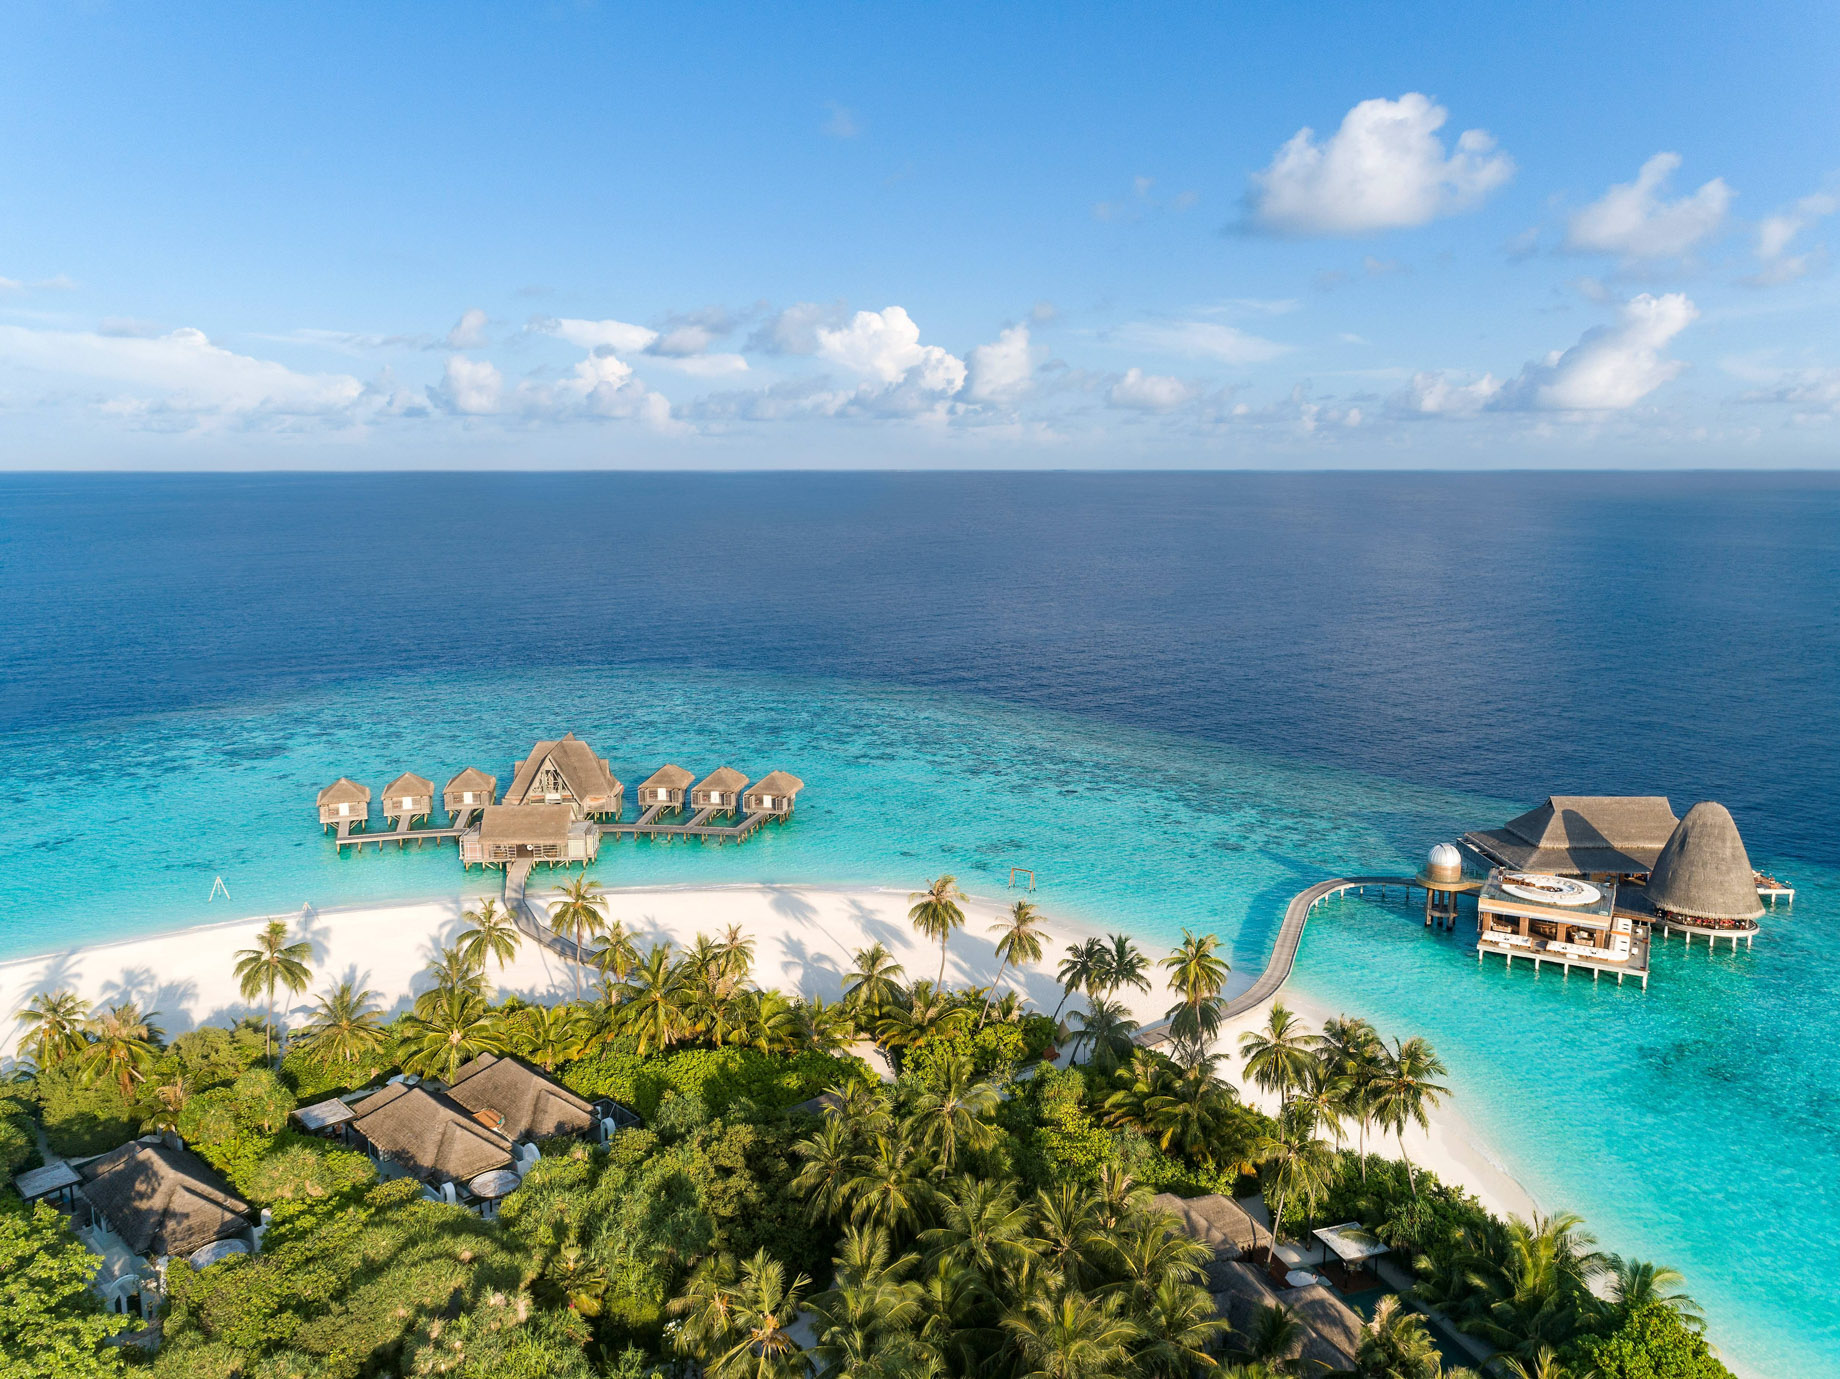 Anantara Kihavah Maldives Villas Resort – Baa Atoll, Maldives – Resort Spa and Overwater Restaurant Aerial View